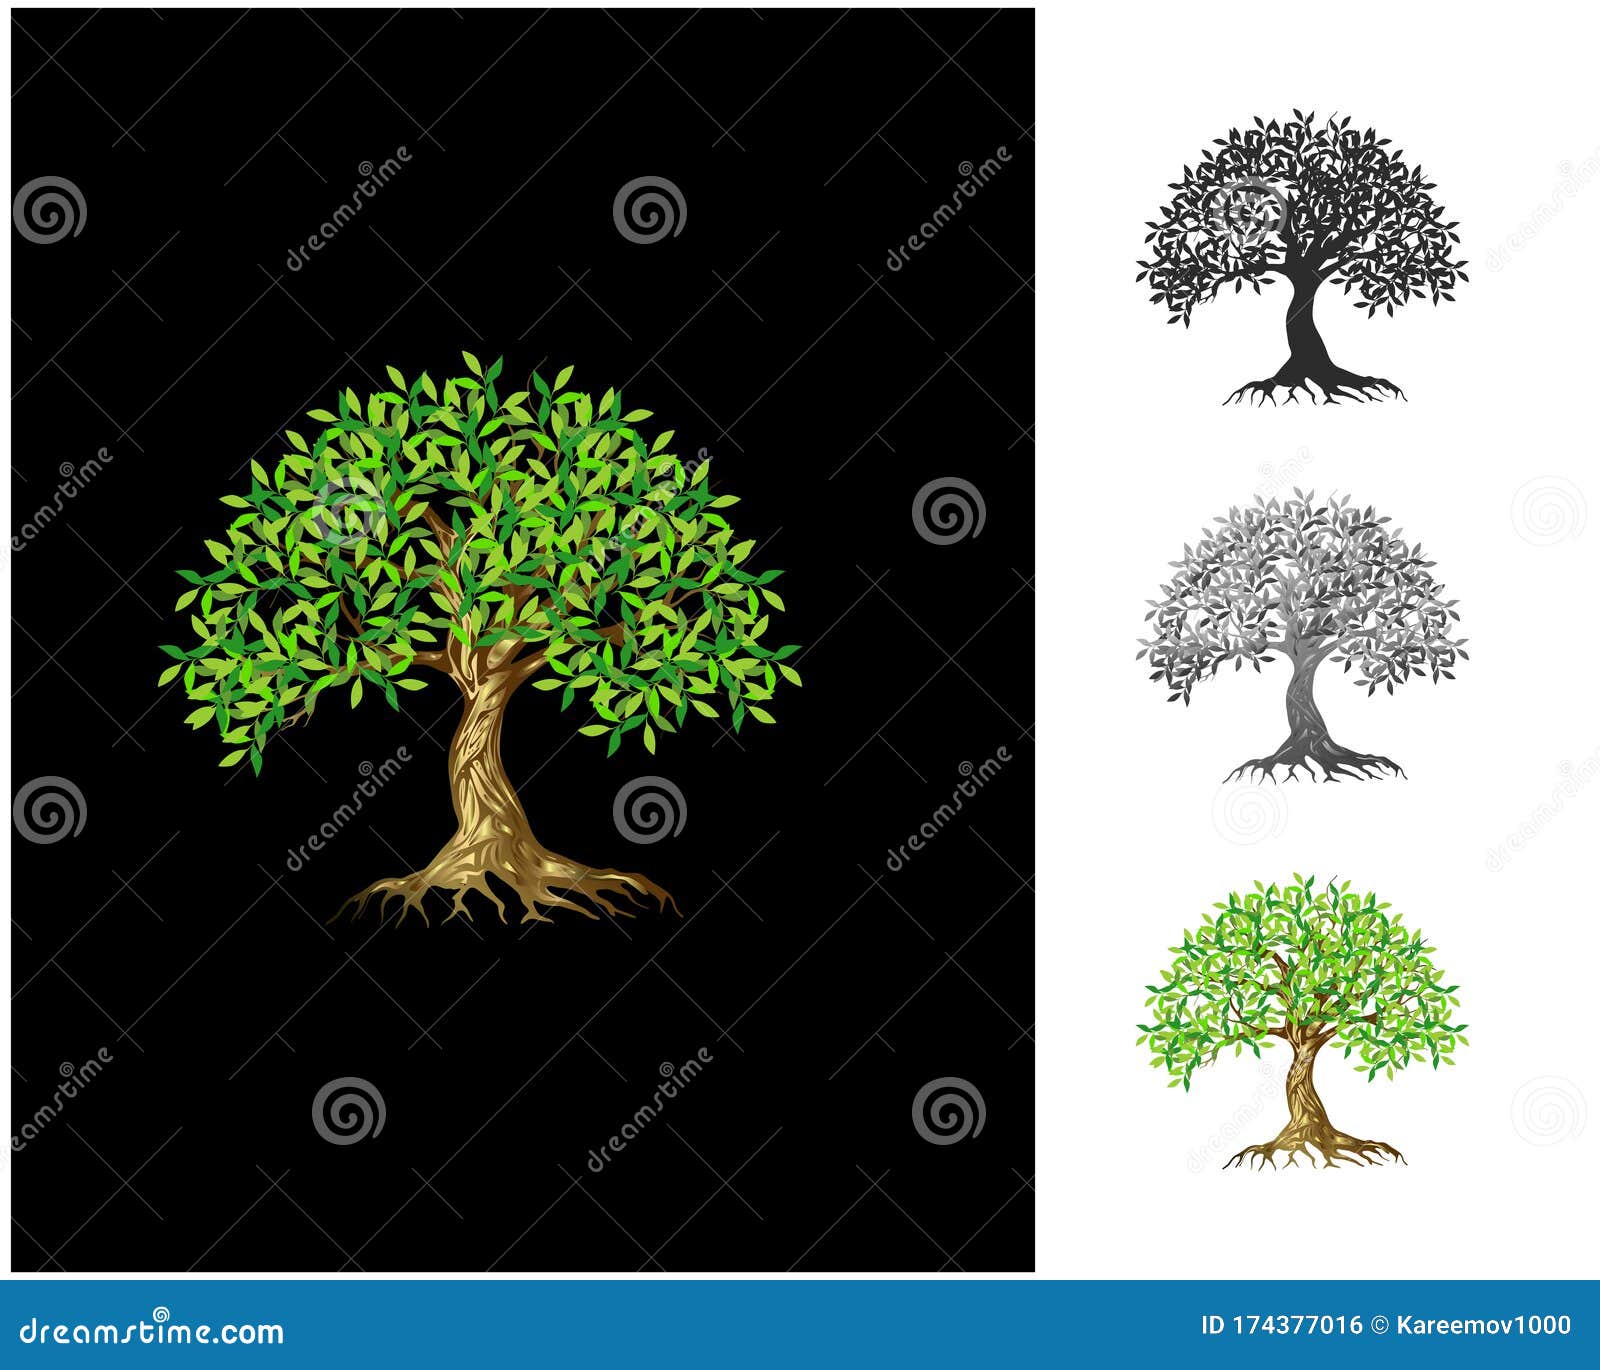 charming decorative tree, luxury elegant tree logo, exotics logo s on black background.